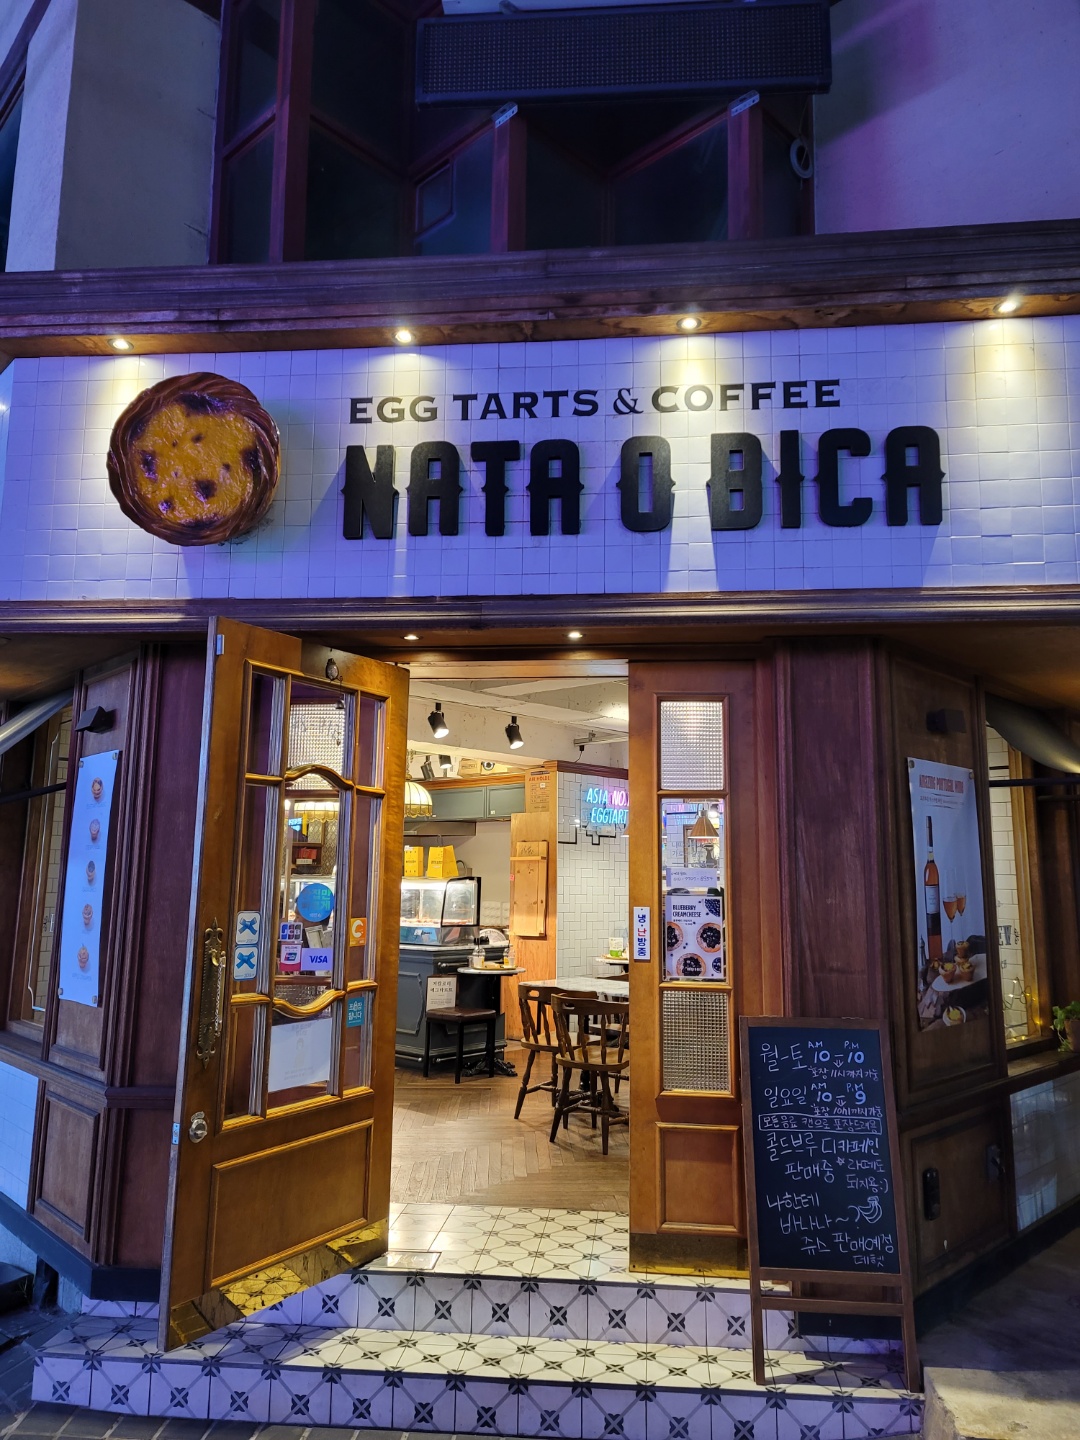 Nata O Bica 에그타르트